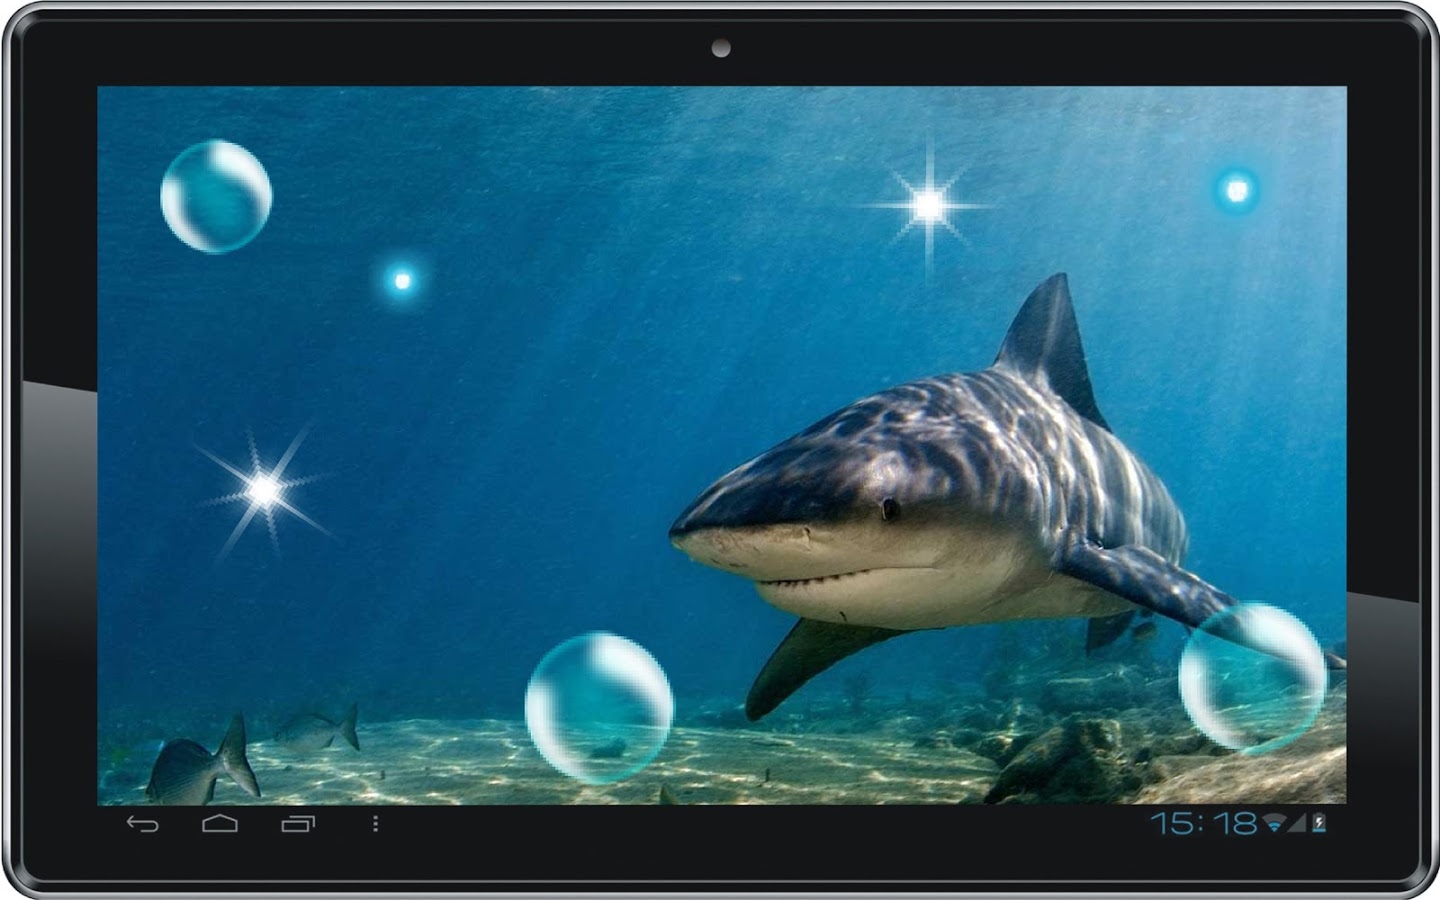 Shark Attack live wallpaper   screenshot 1440x900